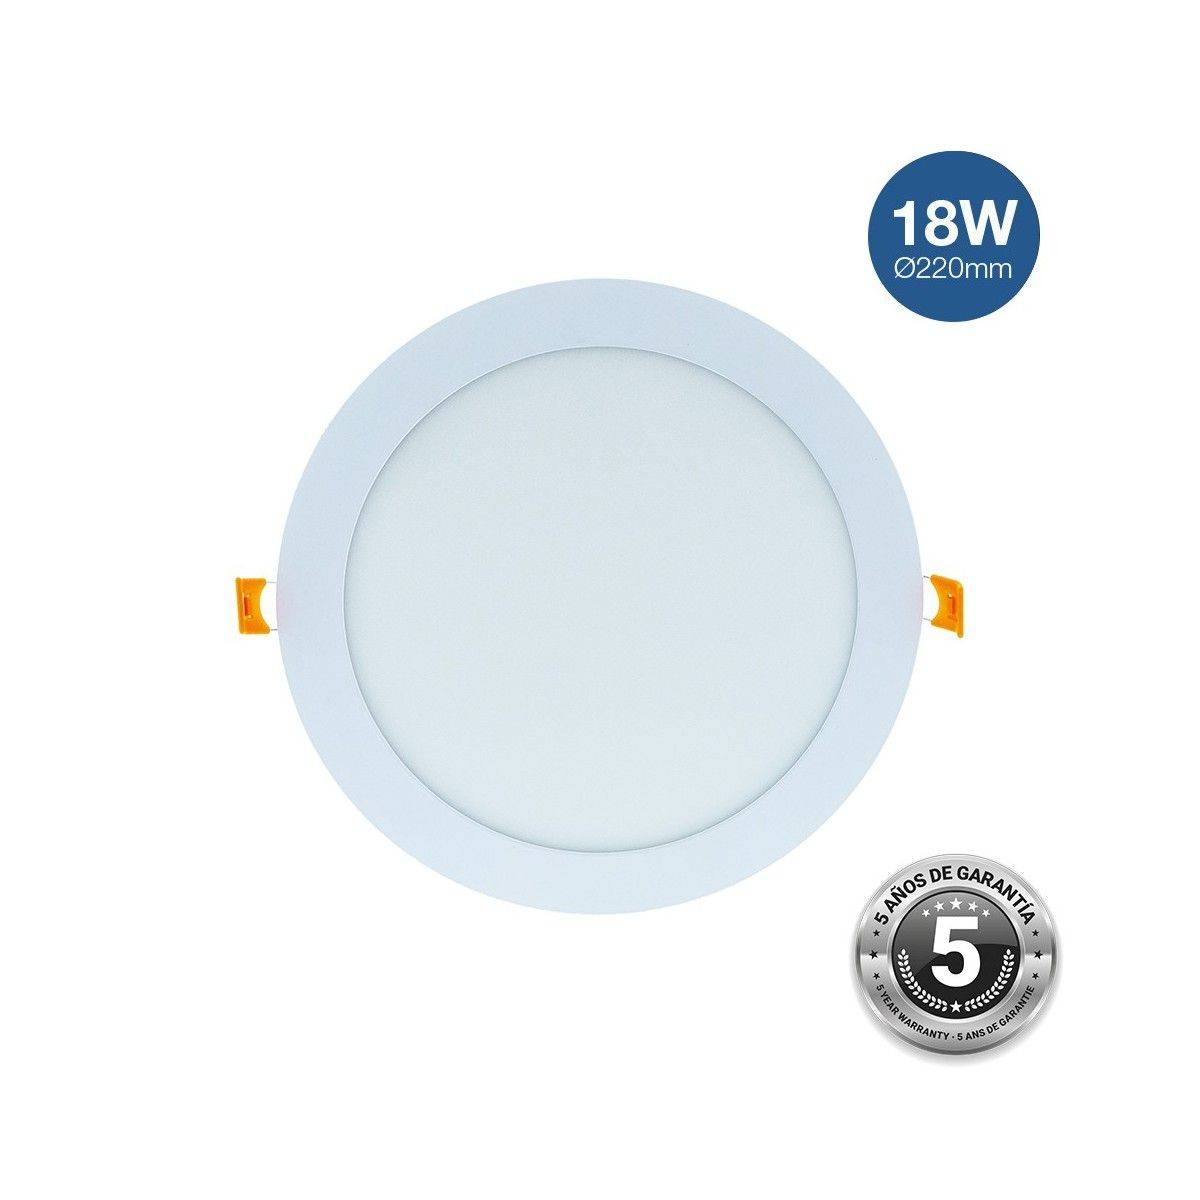 18W LED-Einbaudownlight - 5 Jahre Garantie